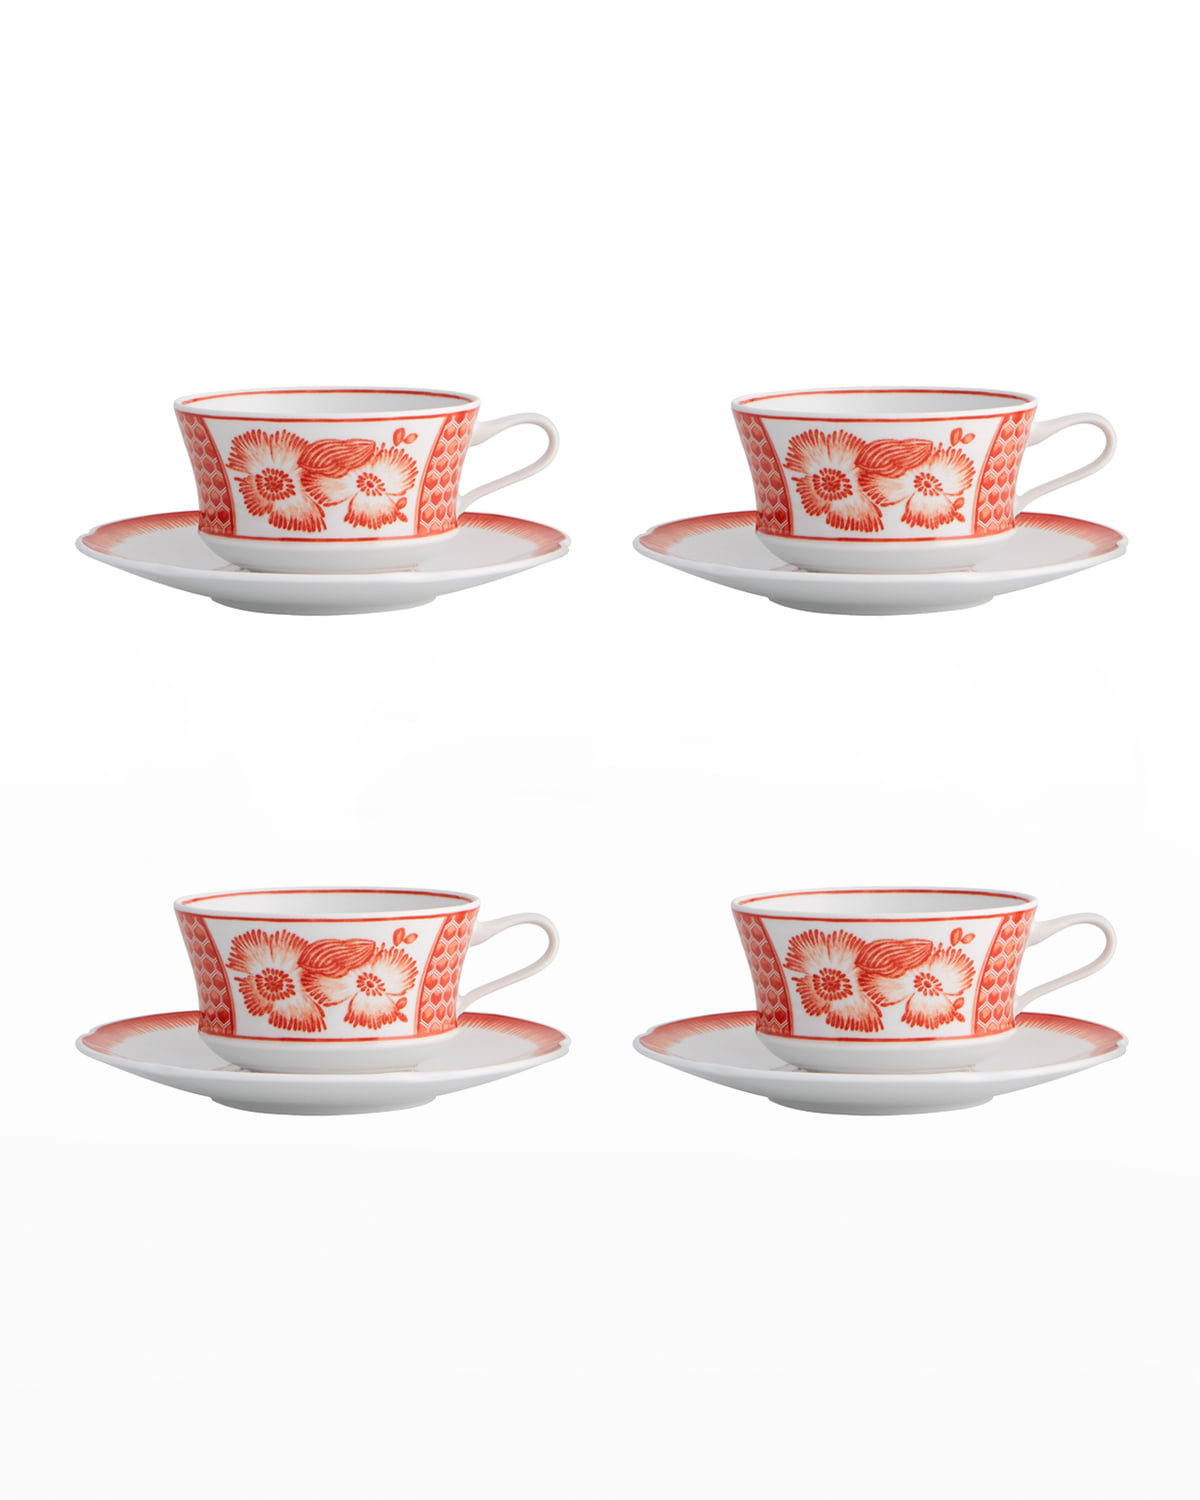 Vista Alegre Coralina Teacups & Saucers, Set Of 4